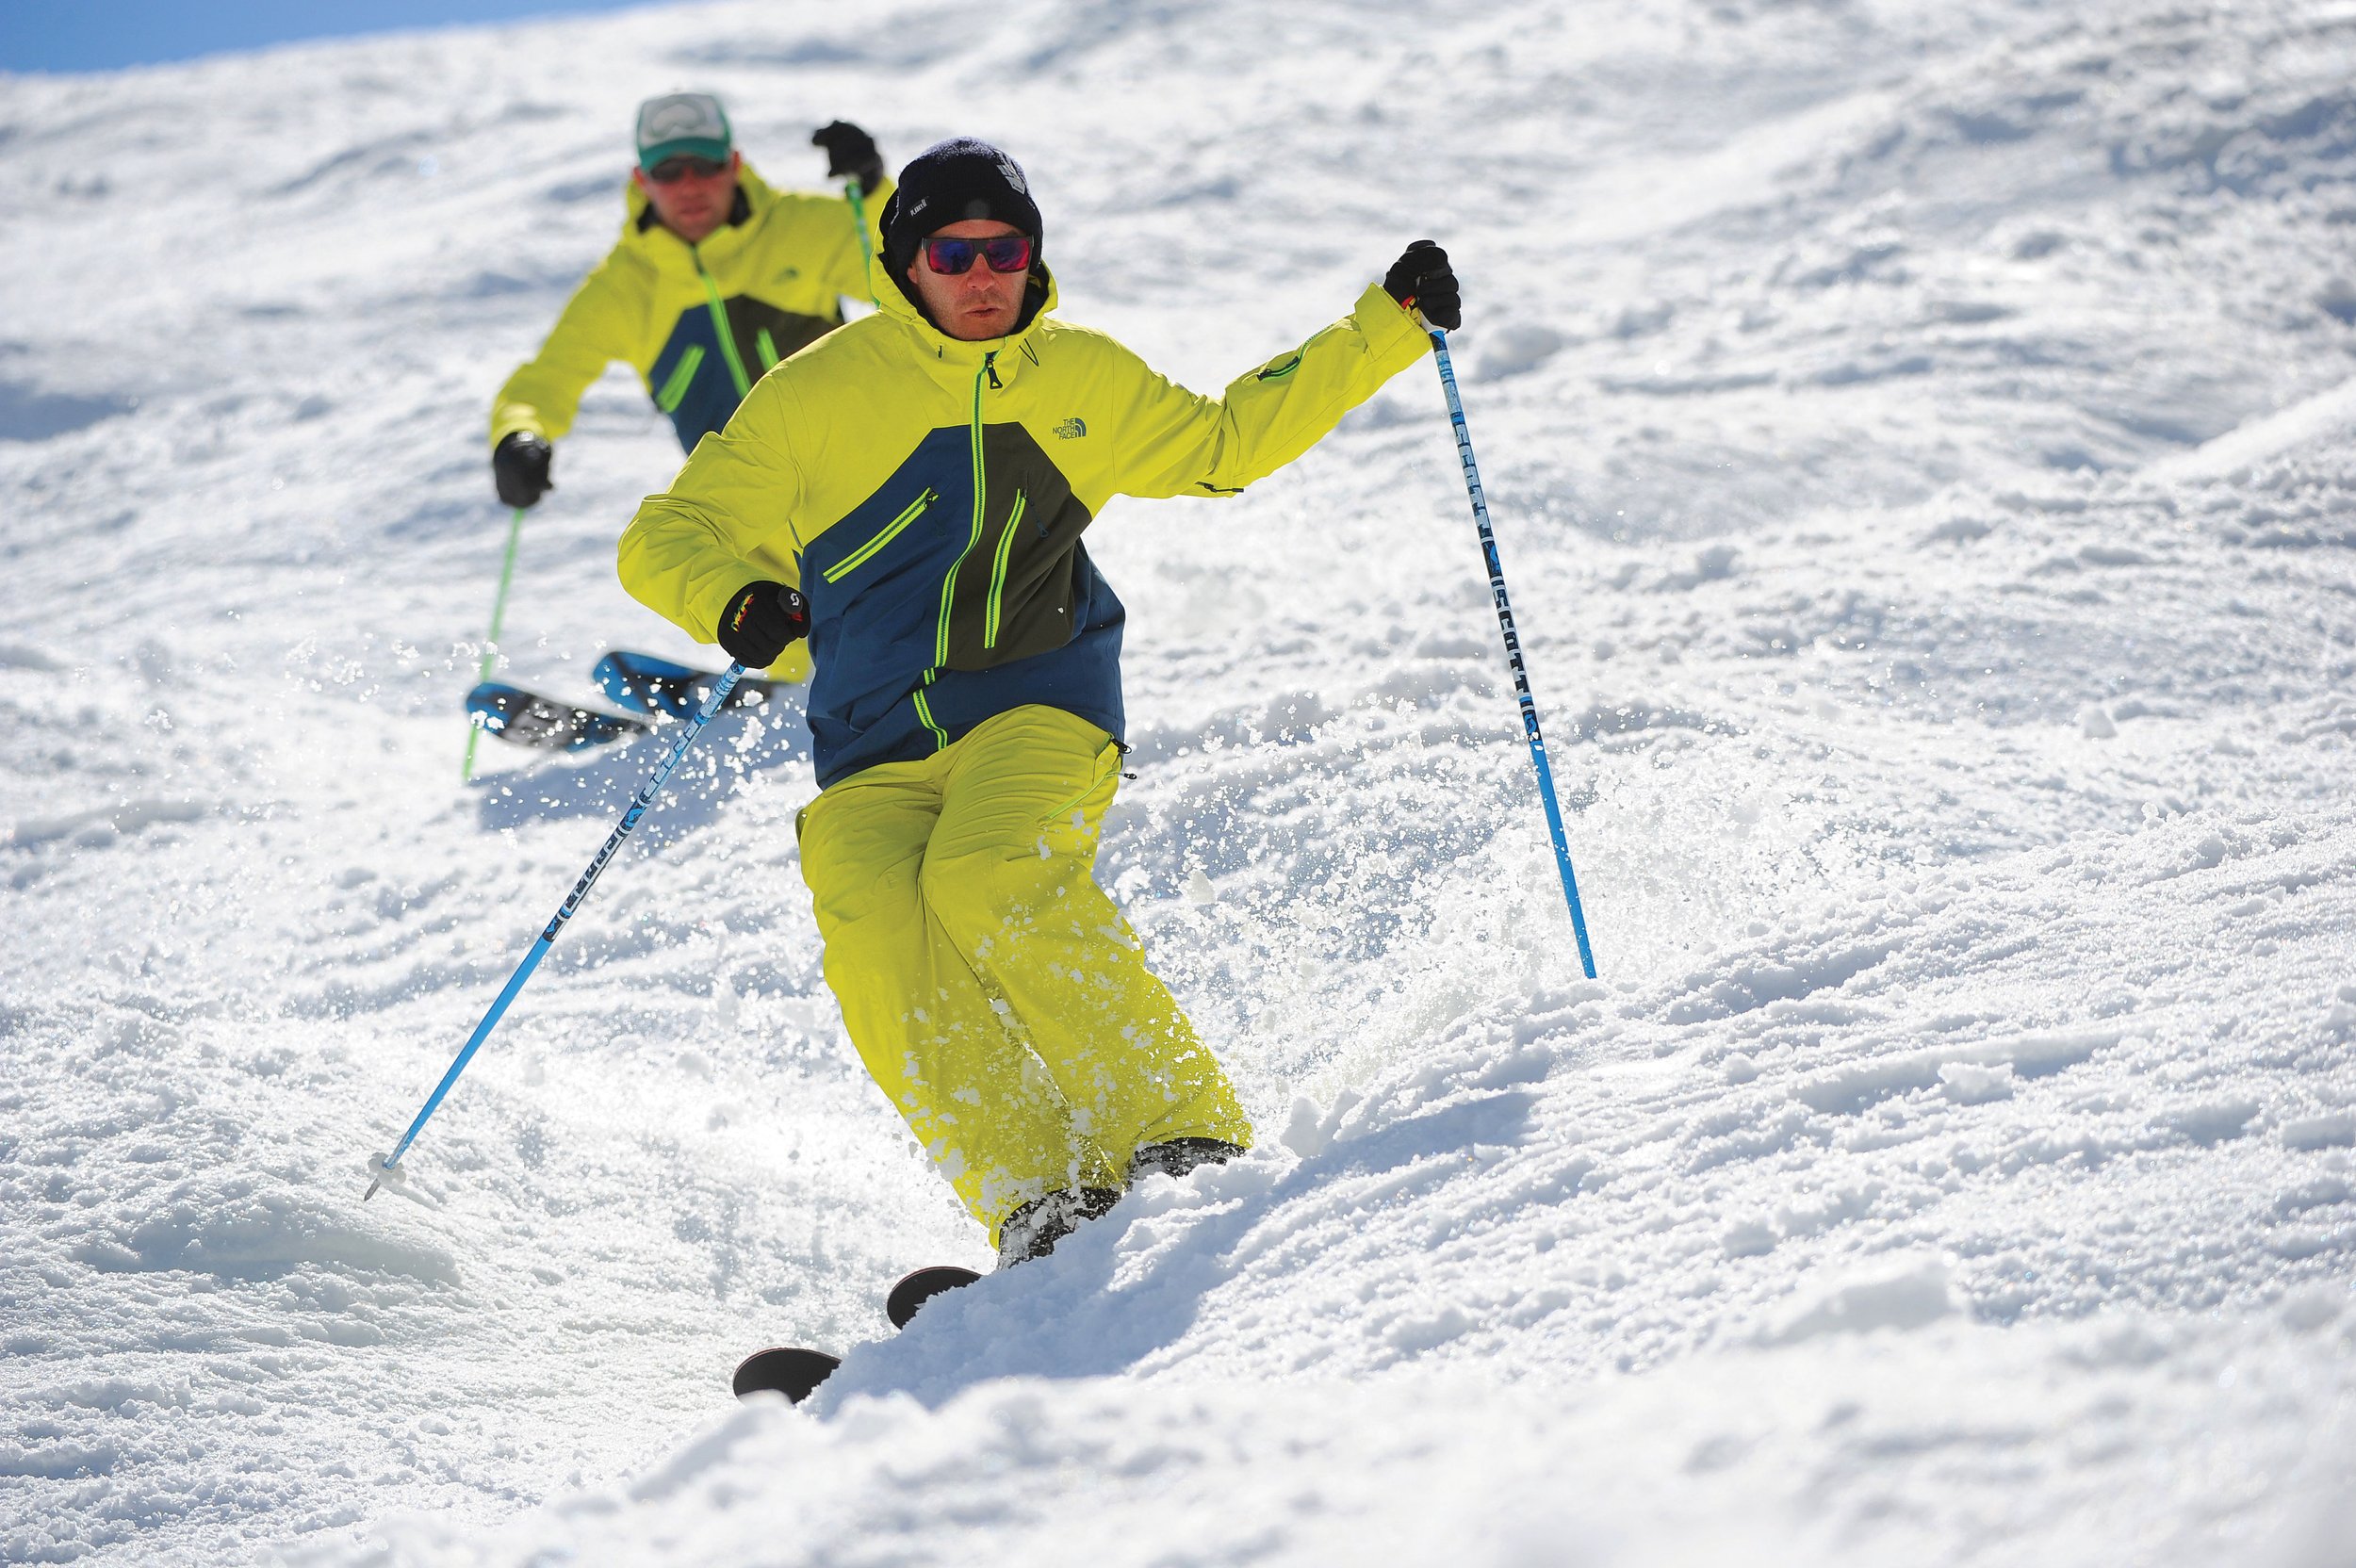 Forbindelse drag Onkel eller Mister Ski Club of Great Britain // Inside Edge // SKI TECHNIQUE ... BOSS THE  BOSSES! — Ski+board